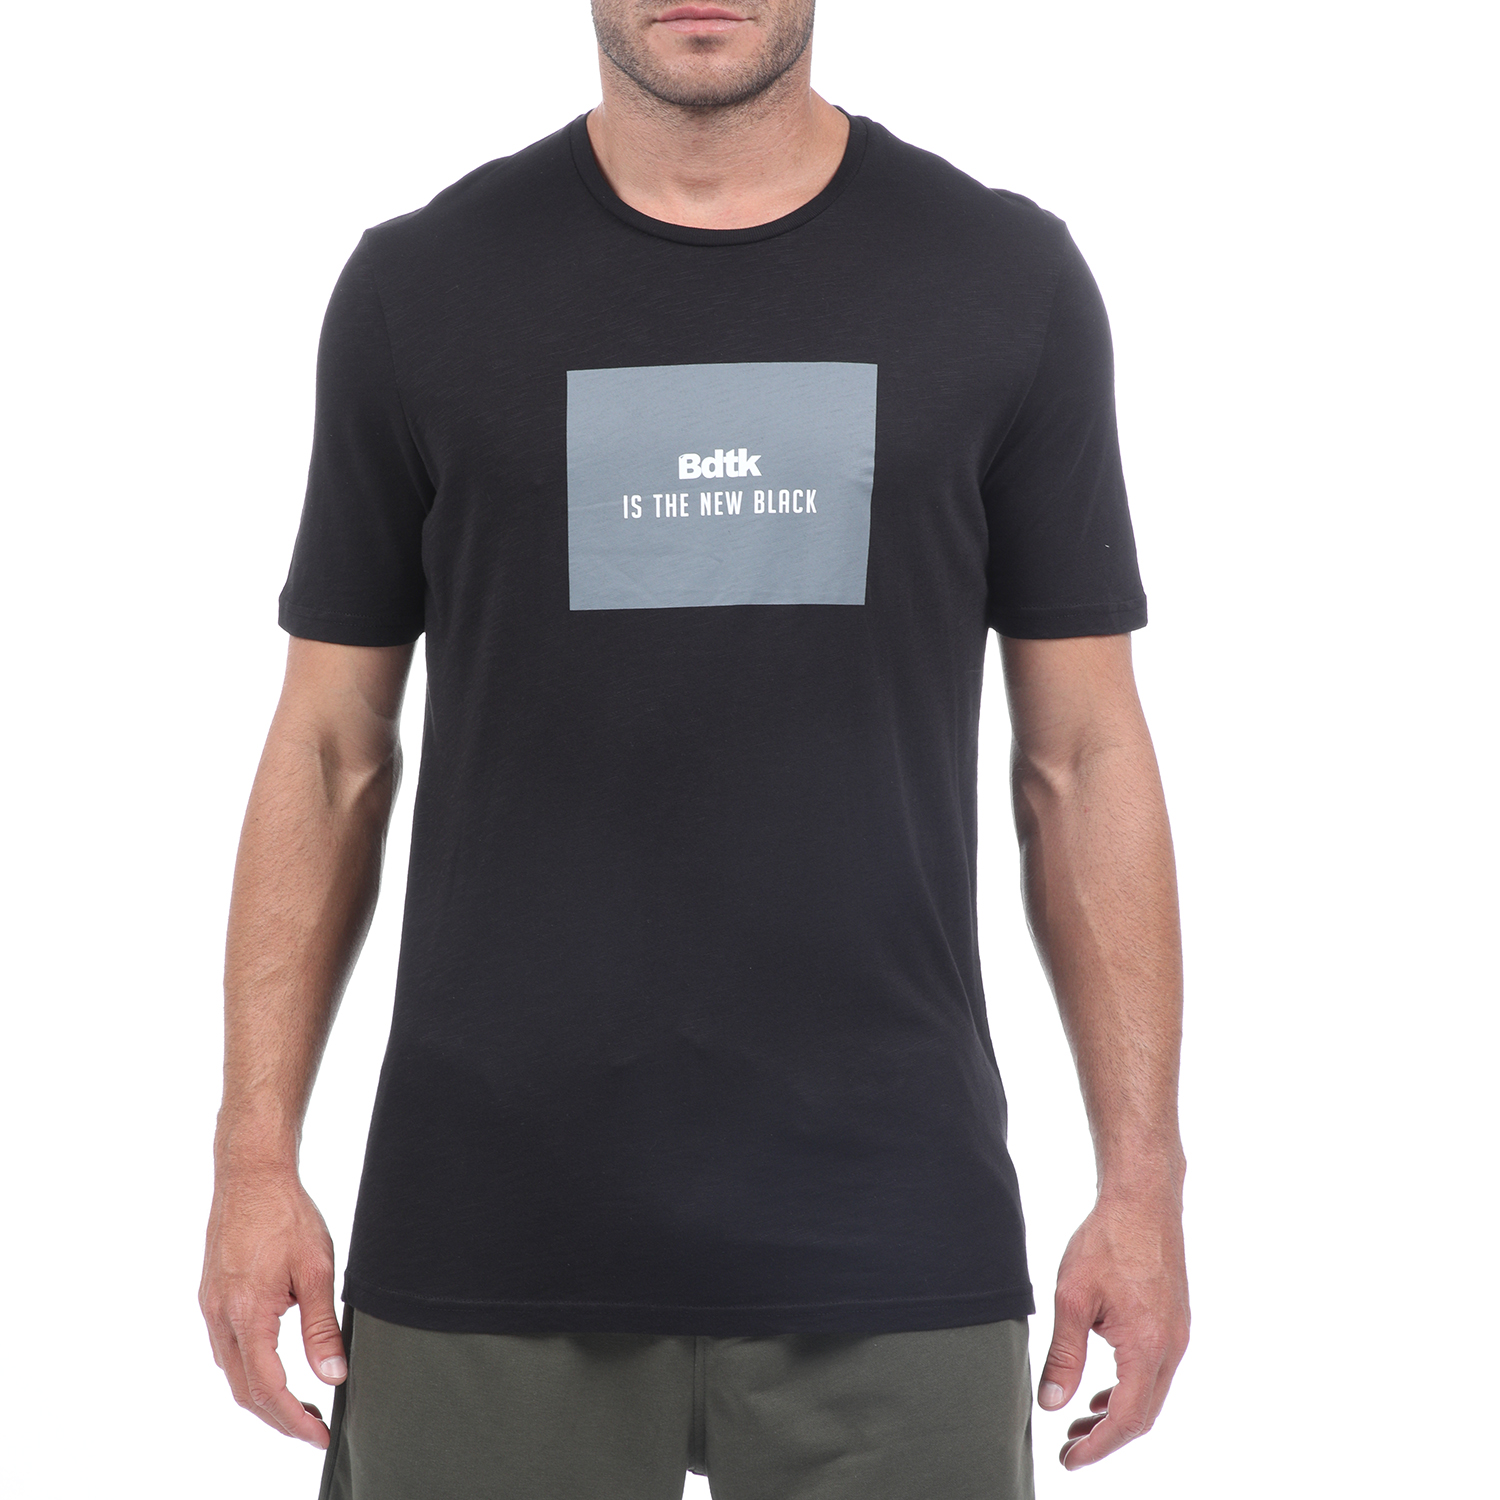 Ανδρικά/Ρούχα/Αθλητικά/T-shirt BODYTALK - Ανδρικό t-shirt BODYTALK μαύρο